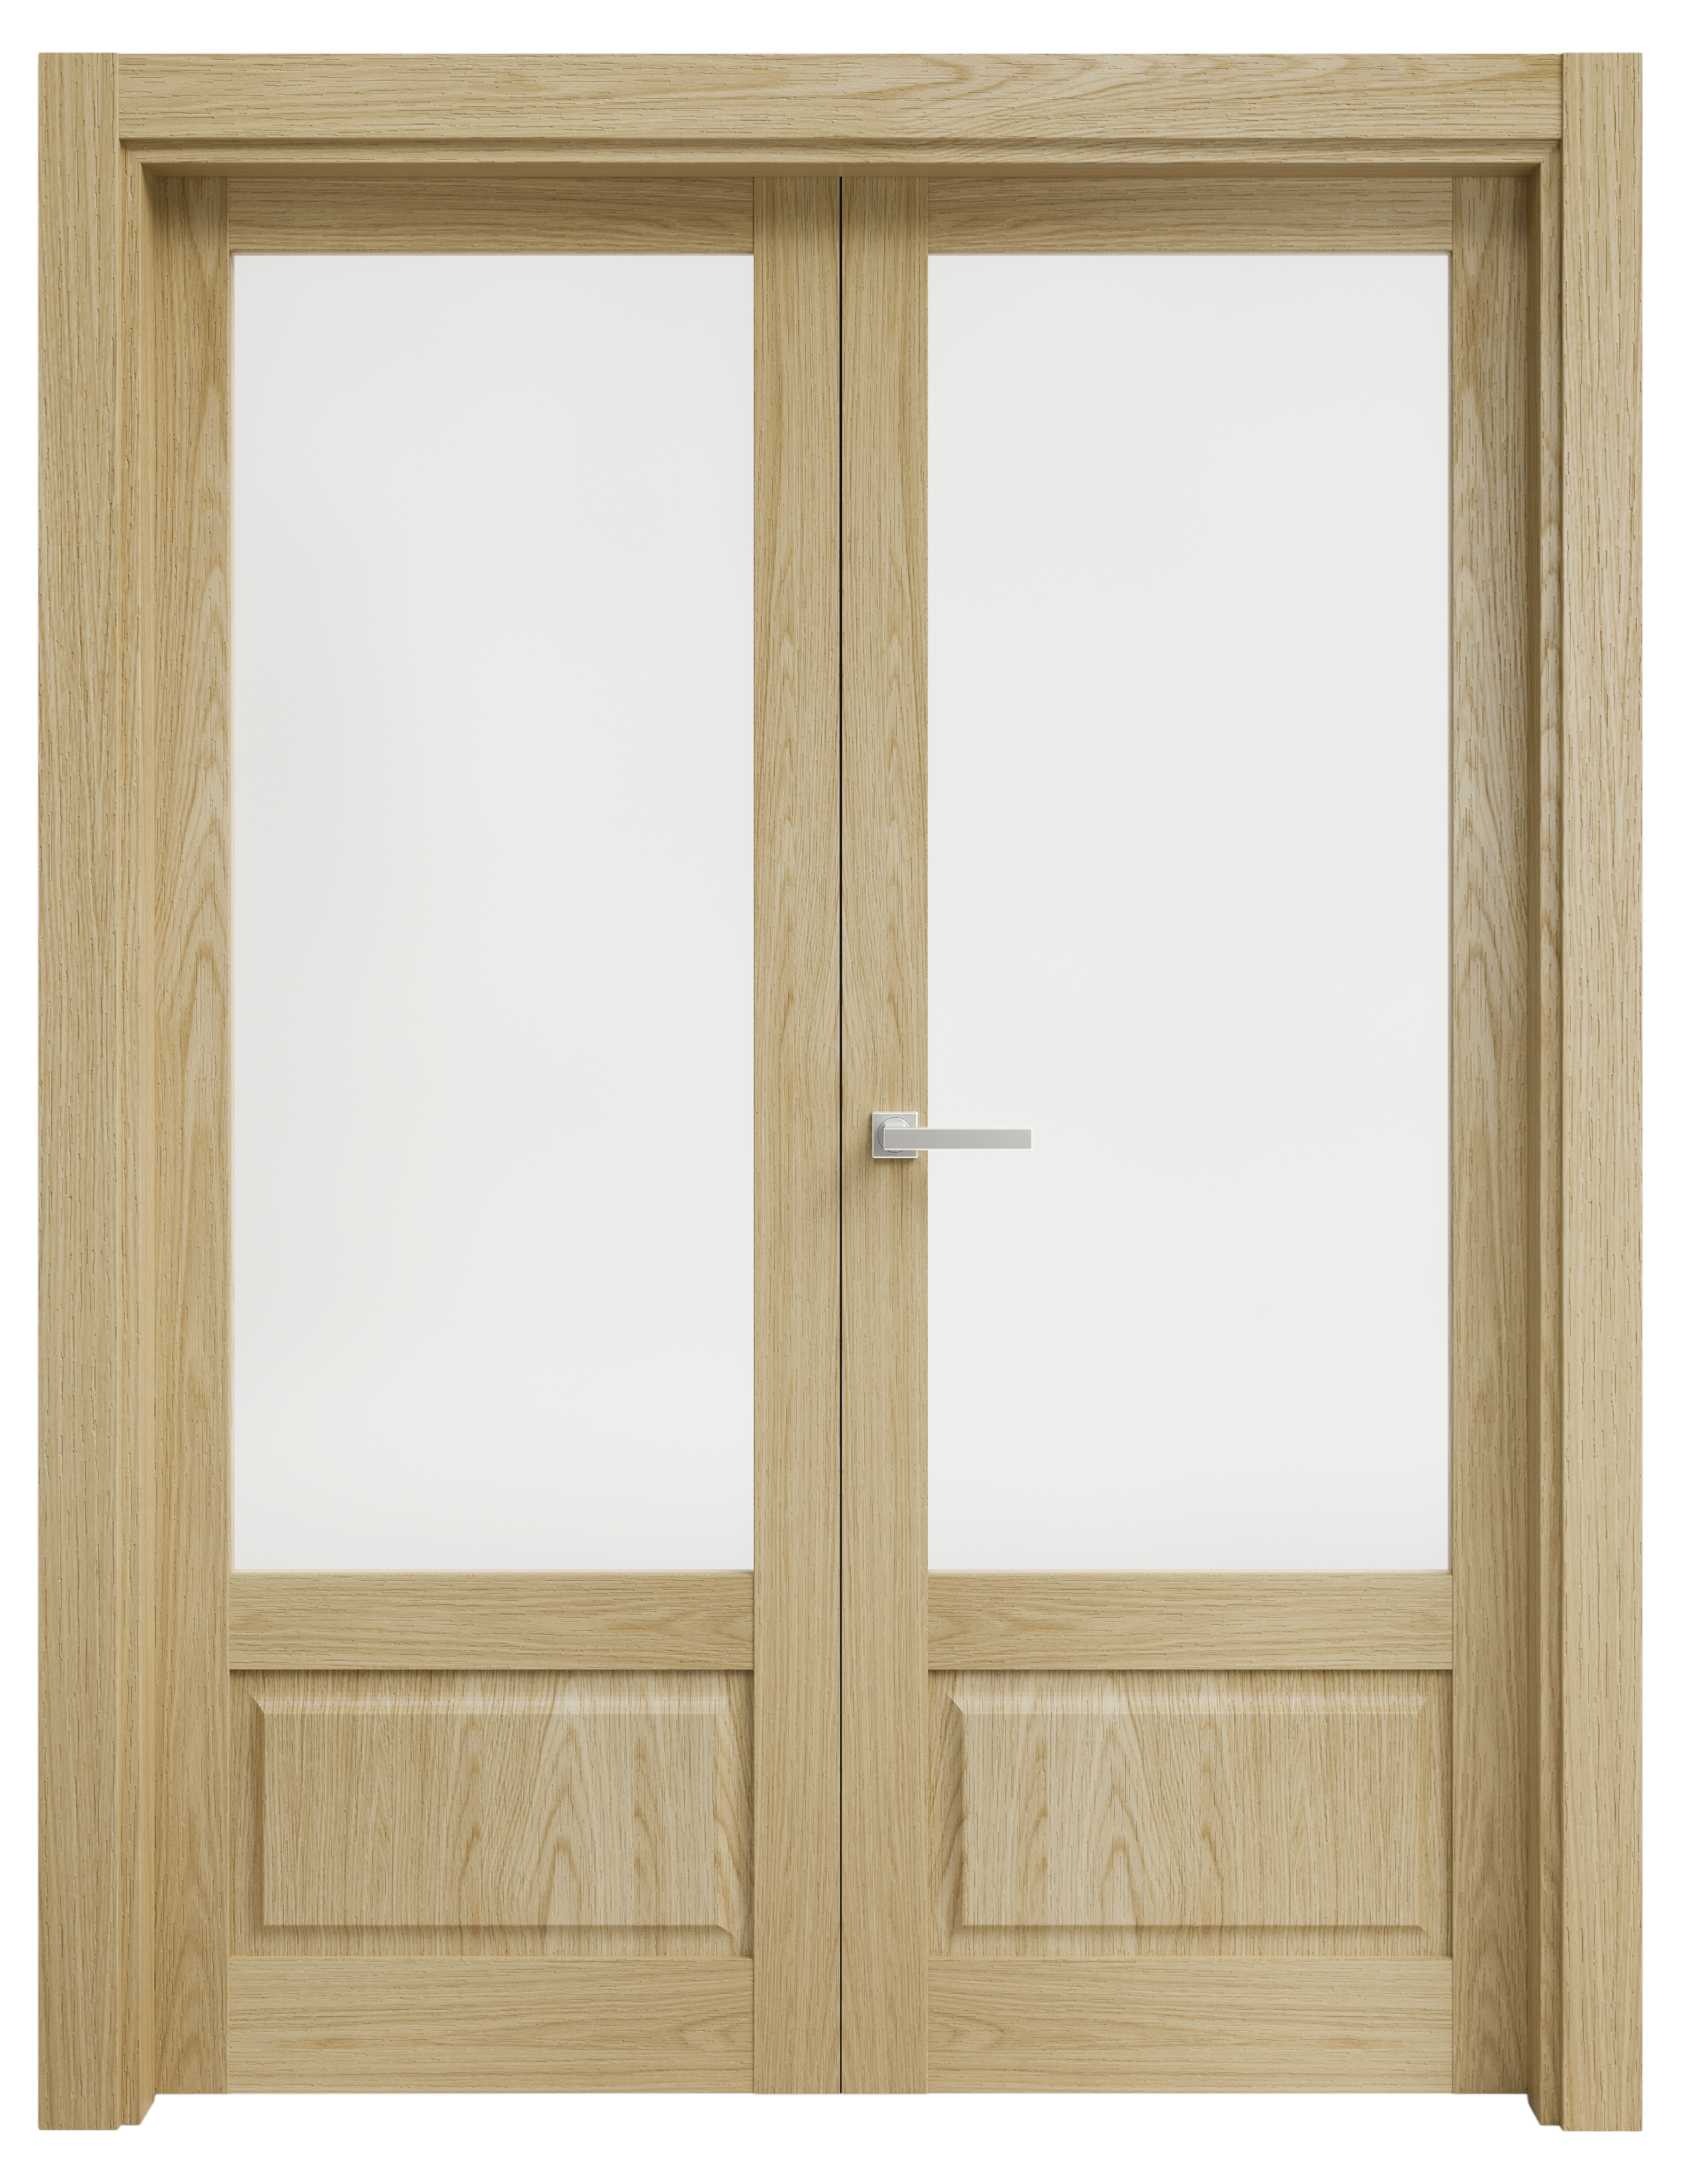 Puerta abatible sofia blanca line plus con cristal roble izquierda de 125 cm